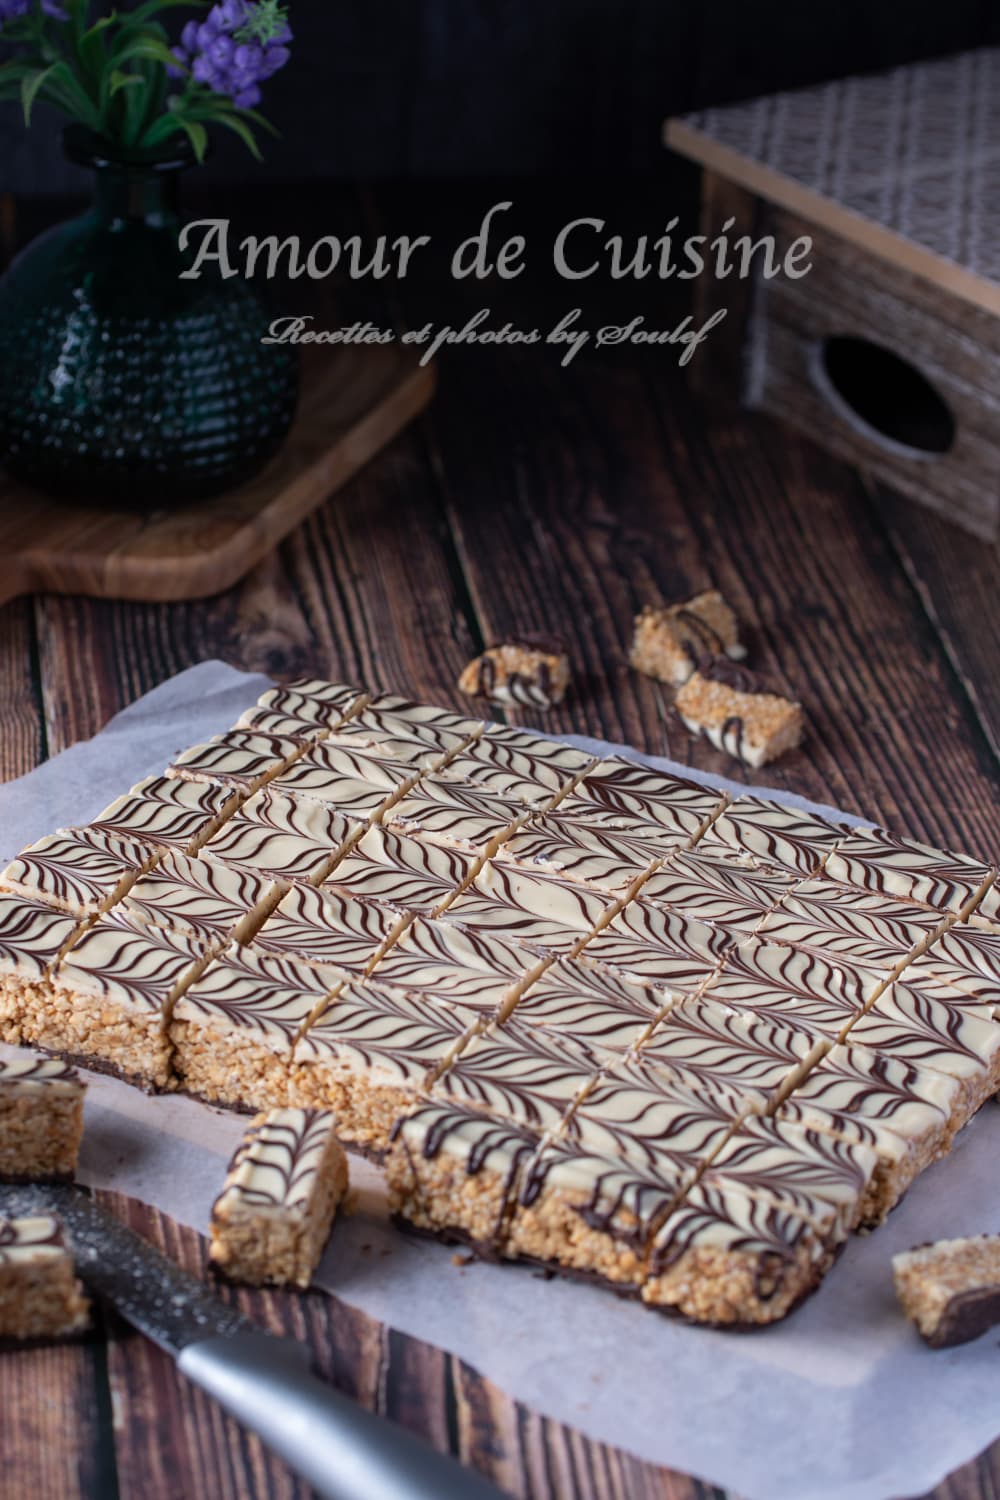 zellige marocain, nougat aux cacahuètes au chocolat blanc